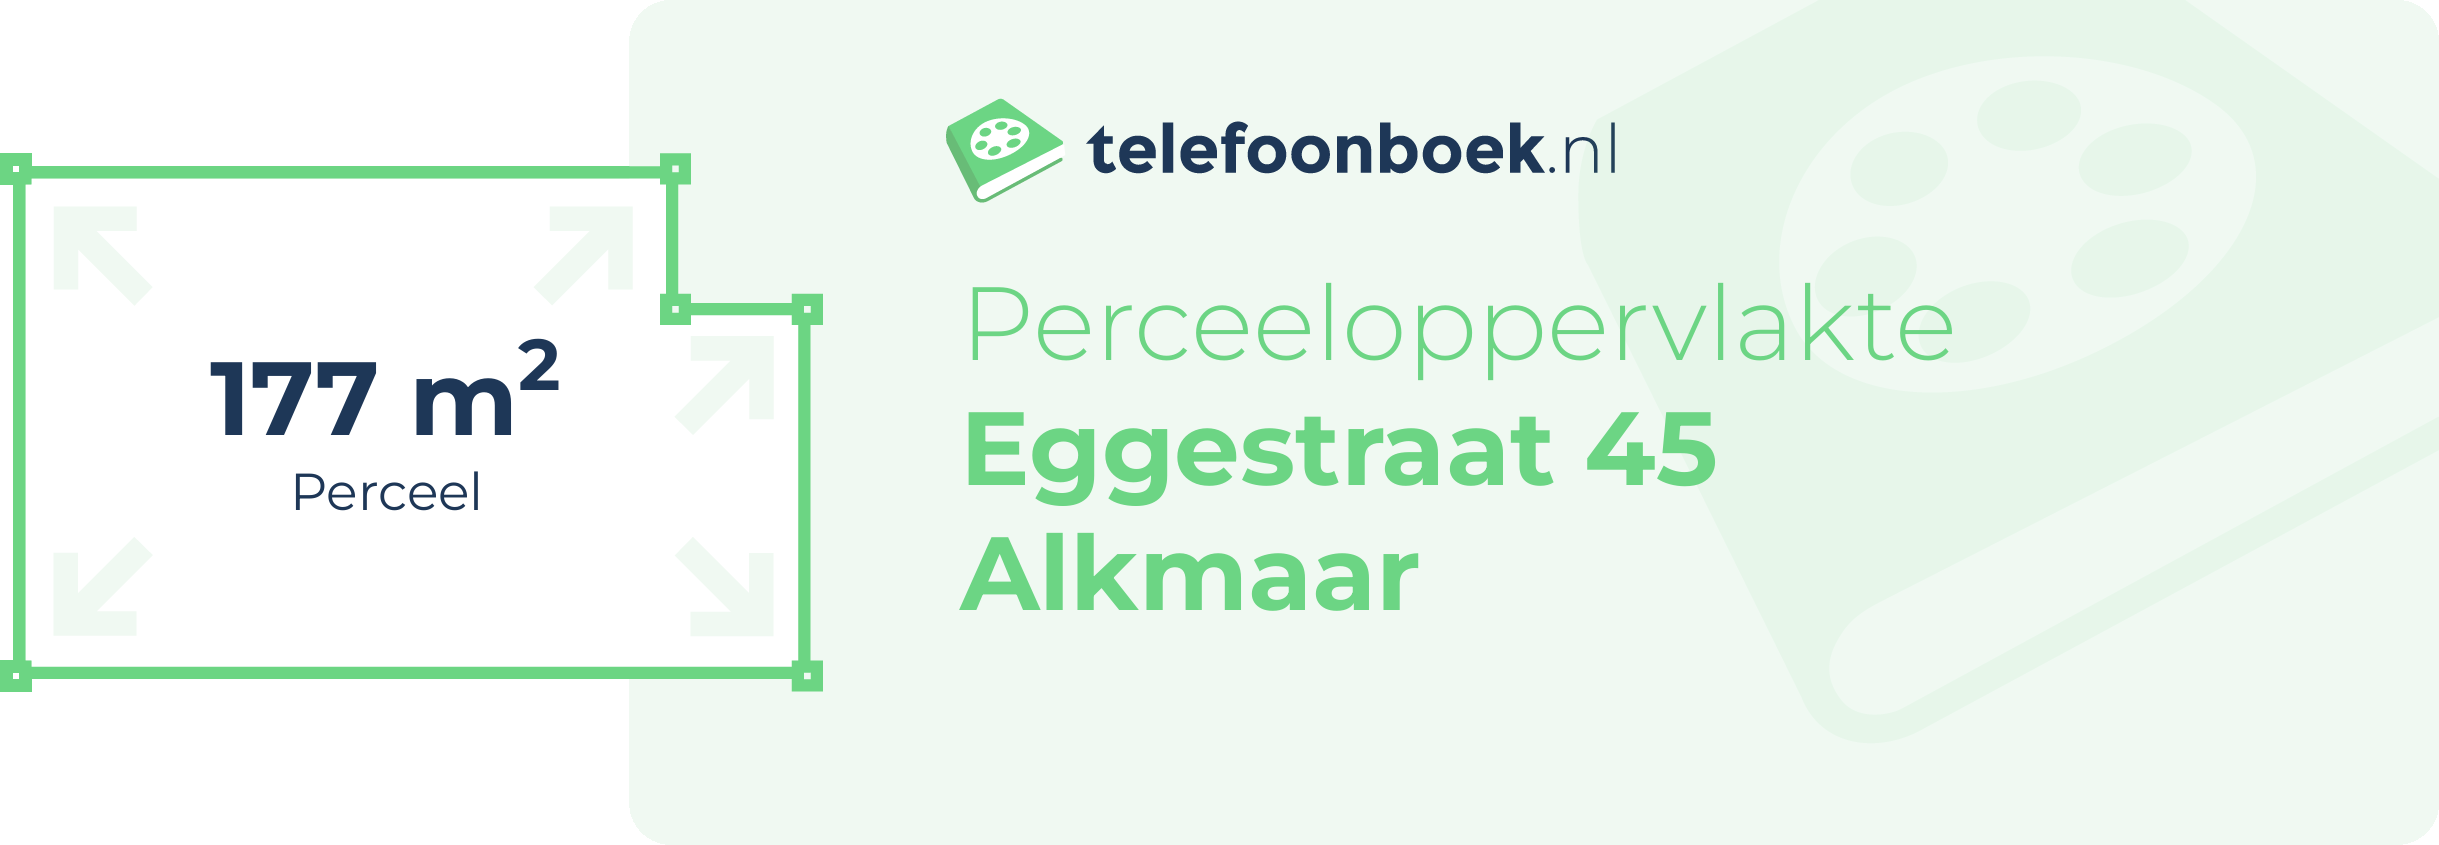 Perceeloppervlakte Eggestraat 45 Alkmaar